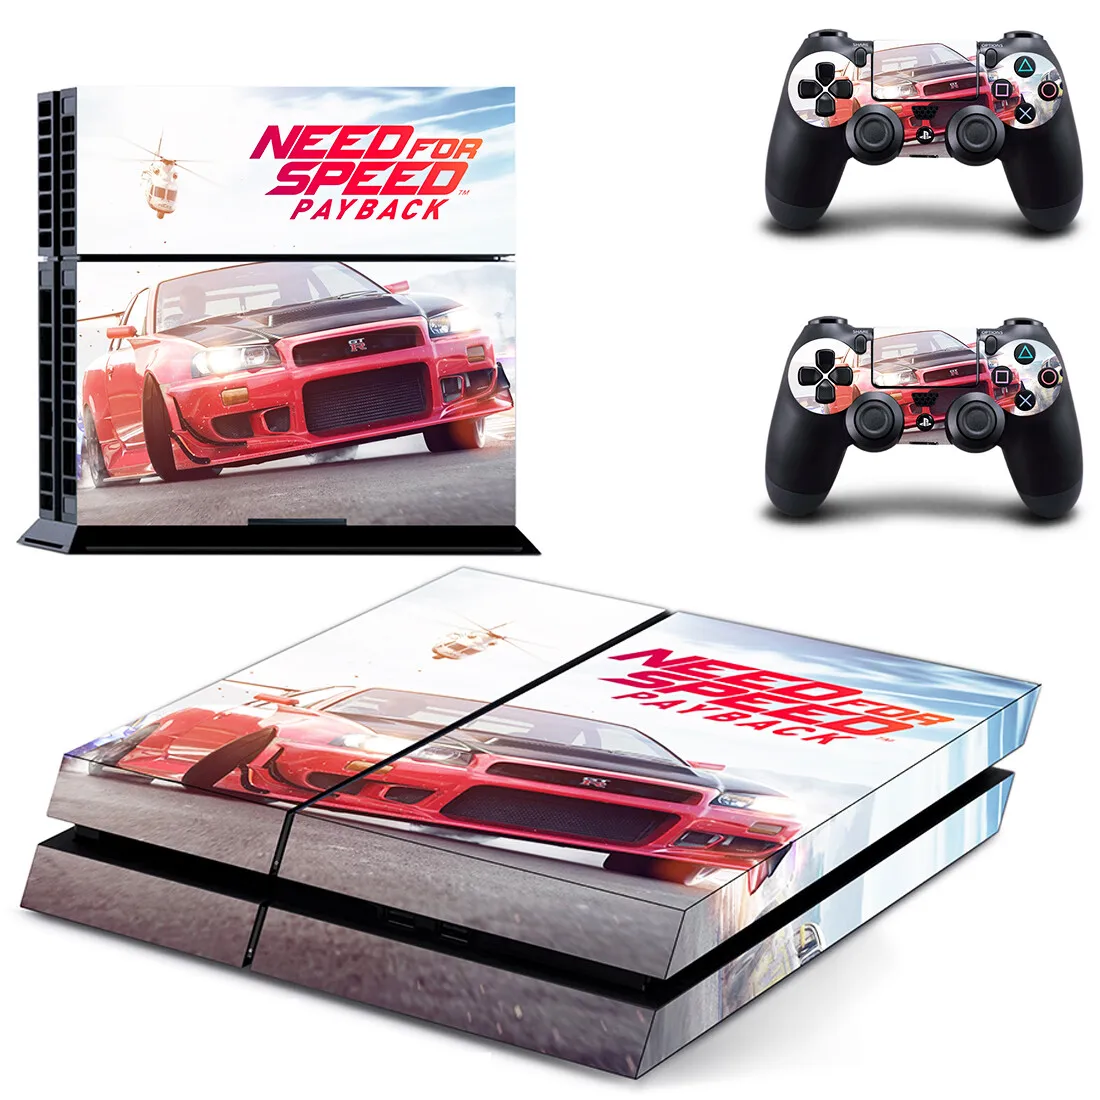 Need for speed Payback наклейка для PS4 наклейка для Dualshock playstation 4 консоль и контроллеры наклейка для PS4 виниловая наклейка, стикер